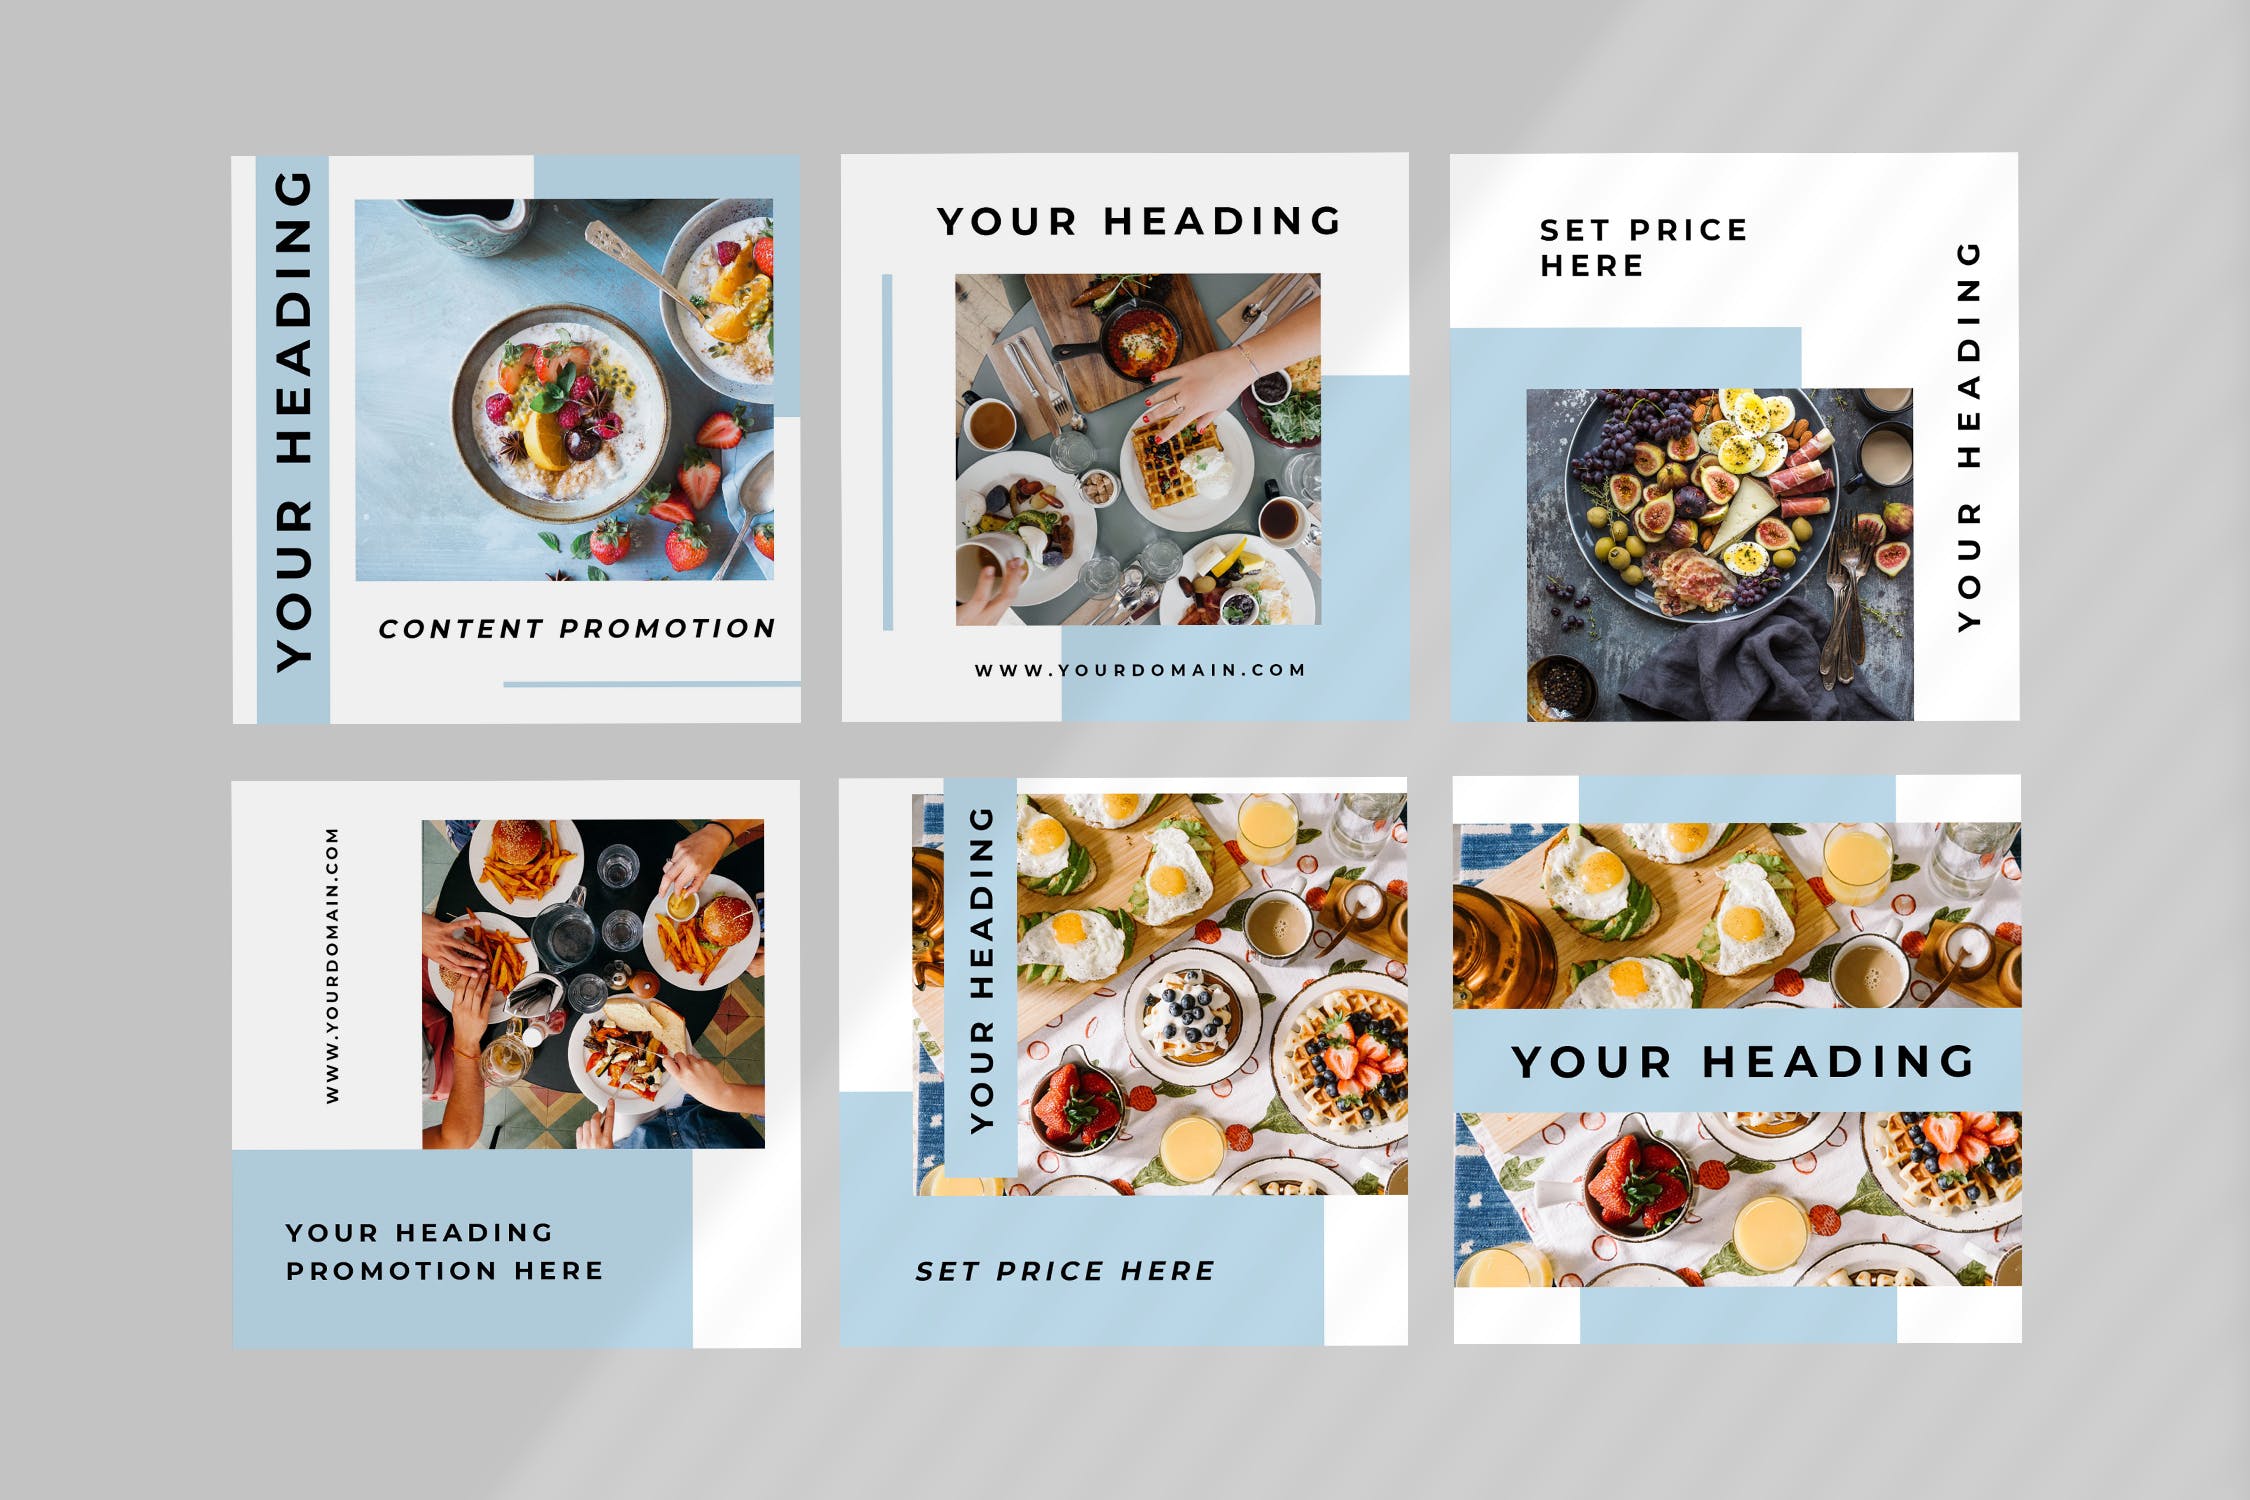 美食/餐饮品牌社交推广设计素材包 One – Food Social Media Kit插图(3)